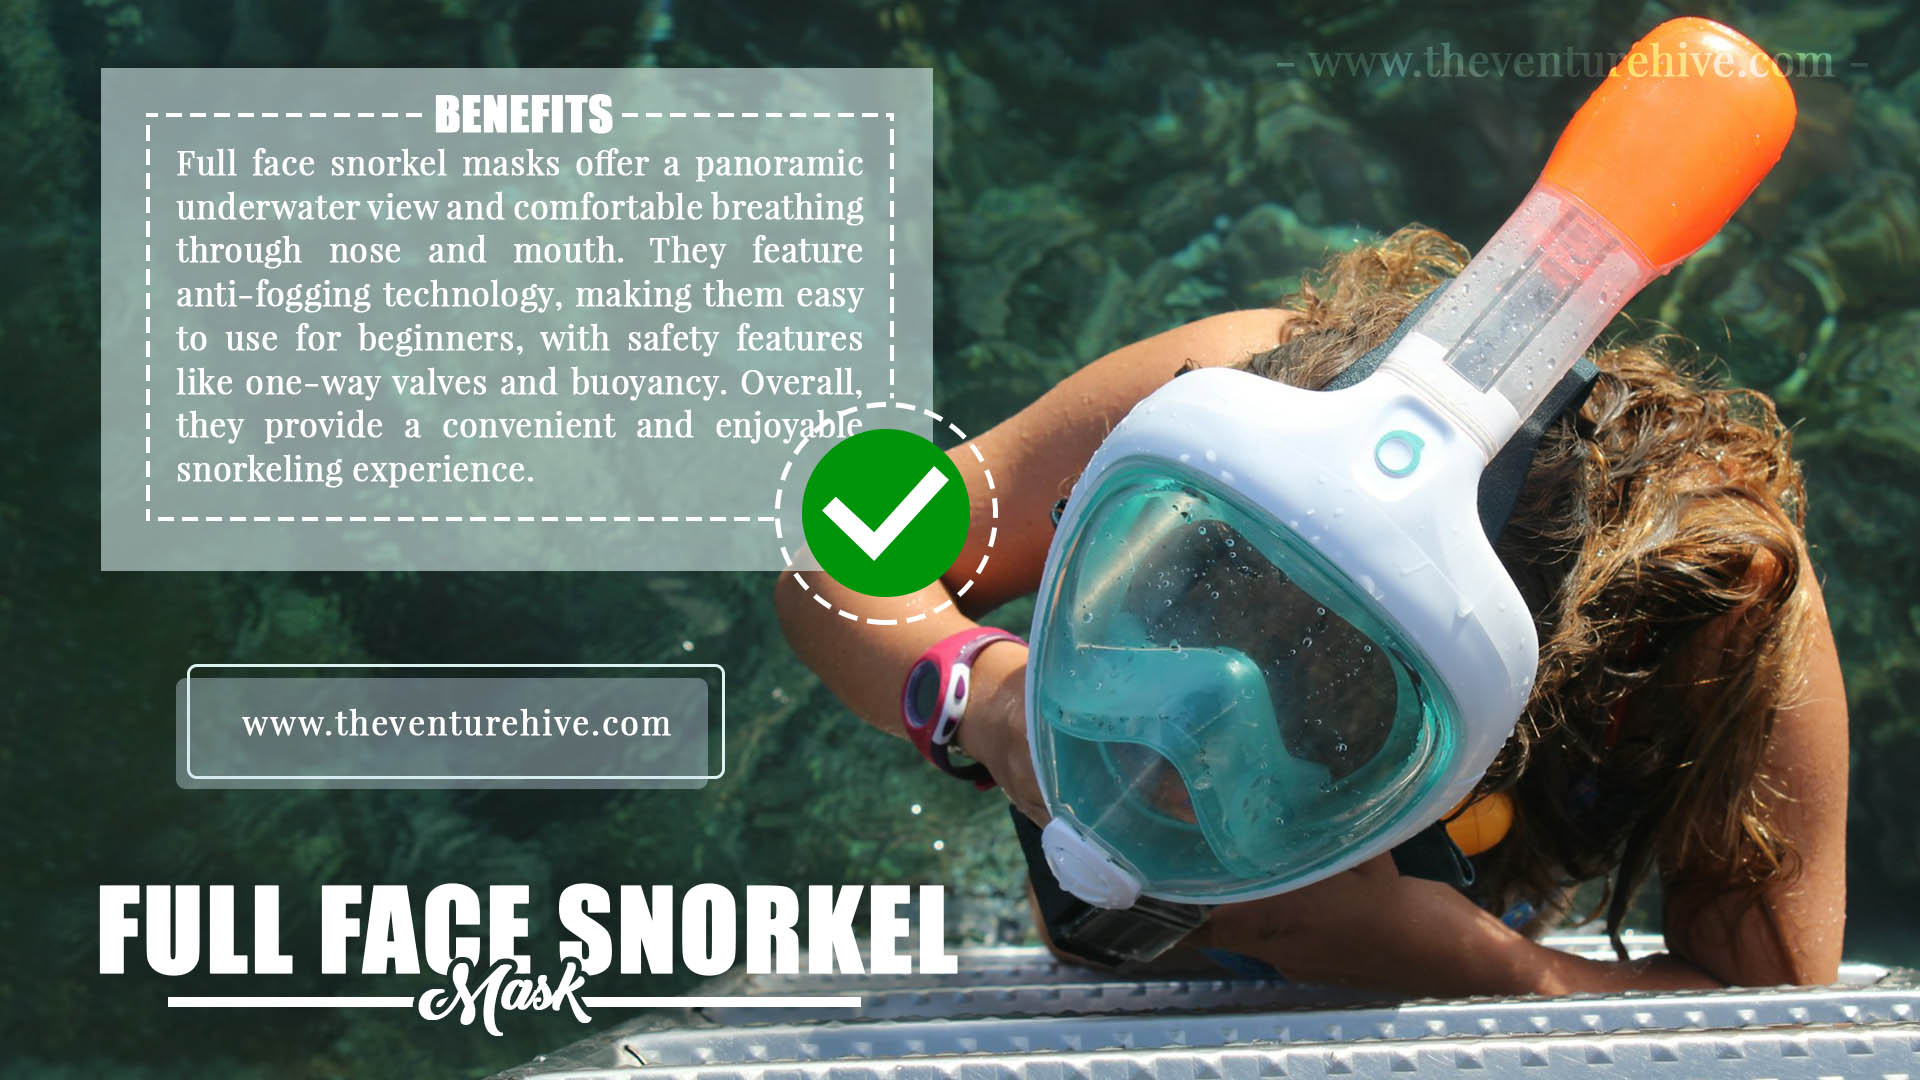 Benefits of full face snorkel masks